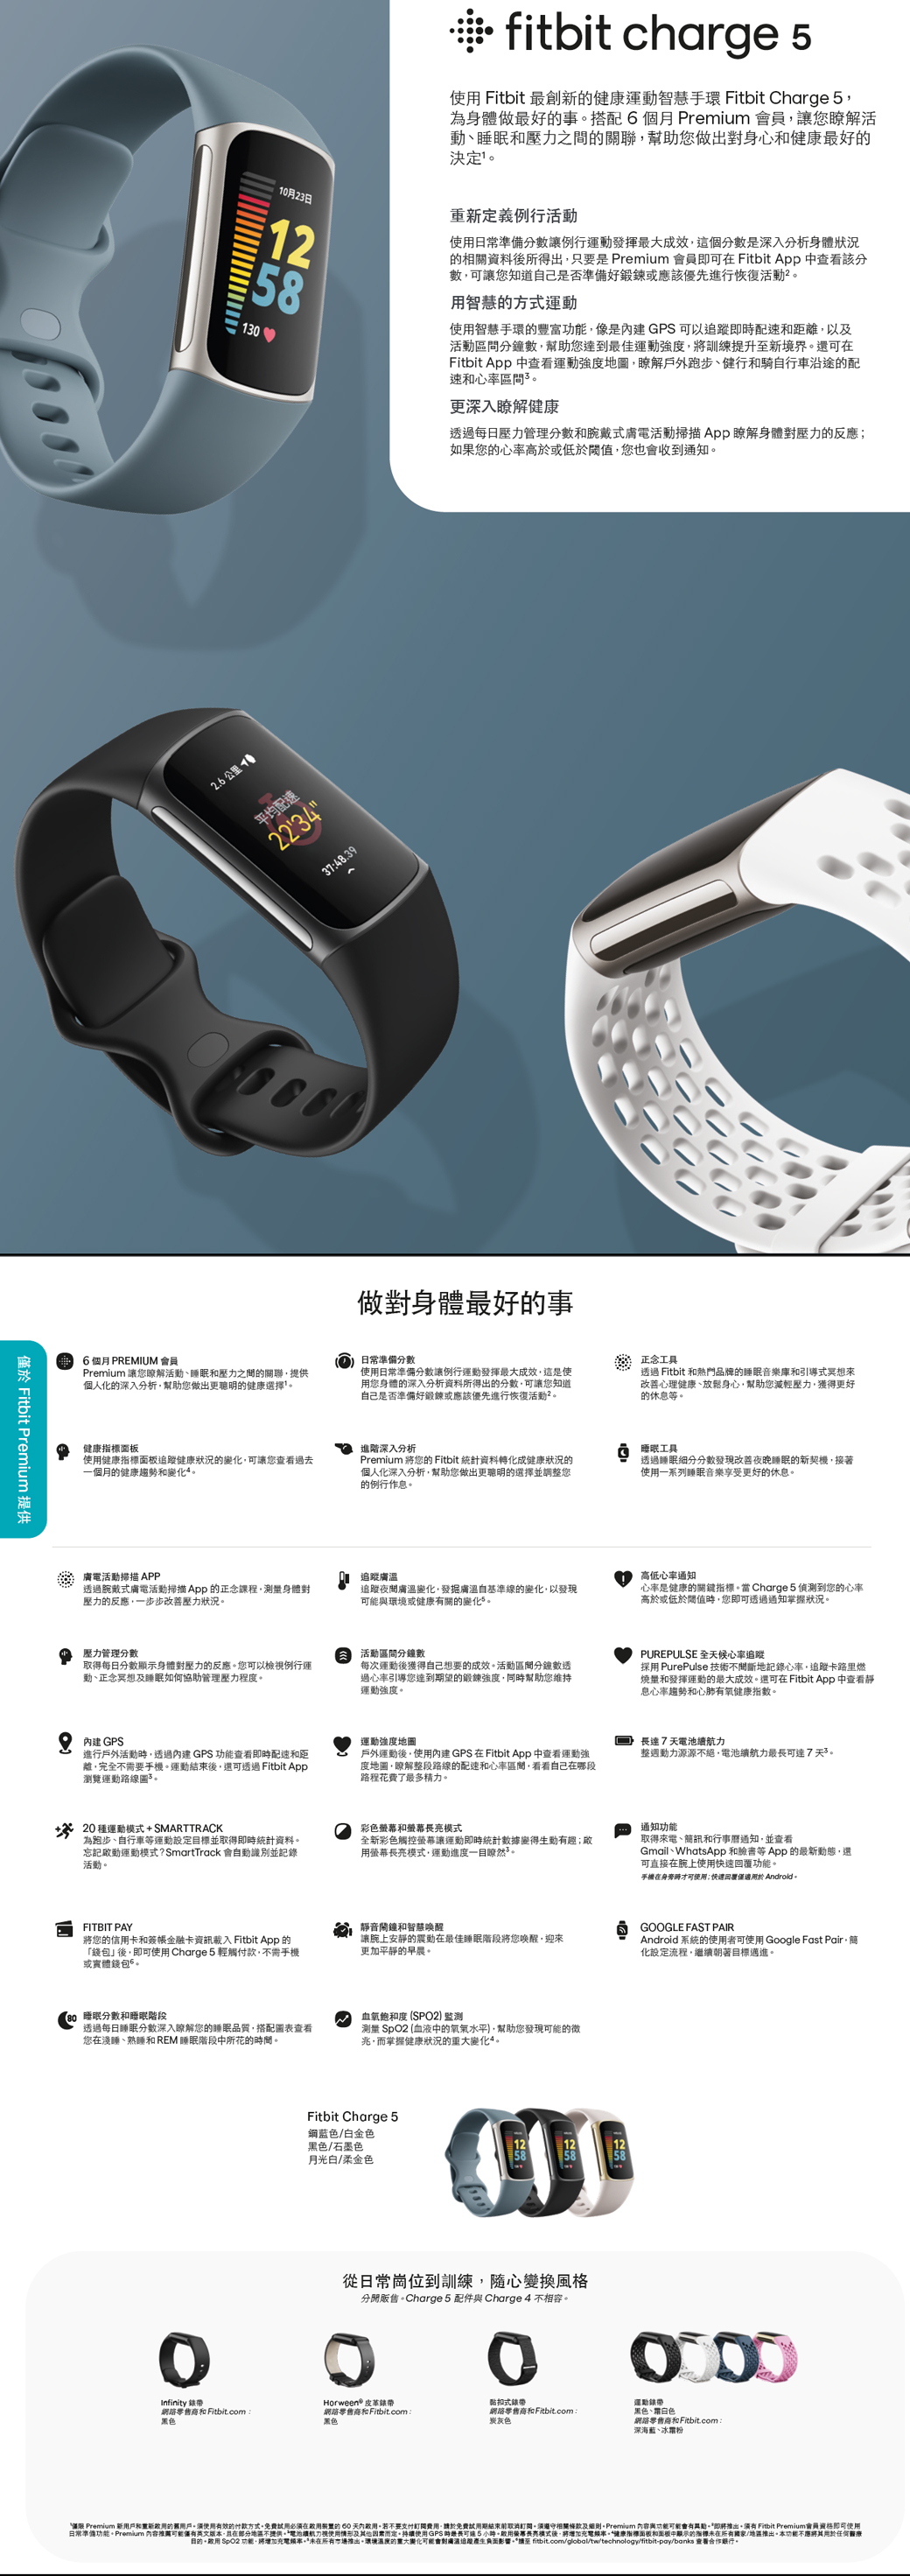 Fitbit Charge 5 健康智慧手環石墨黑| 法雅客網路商店